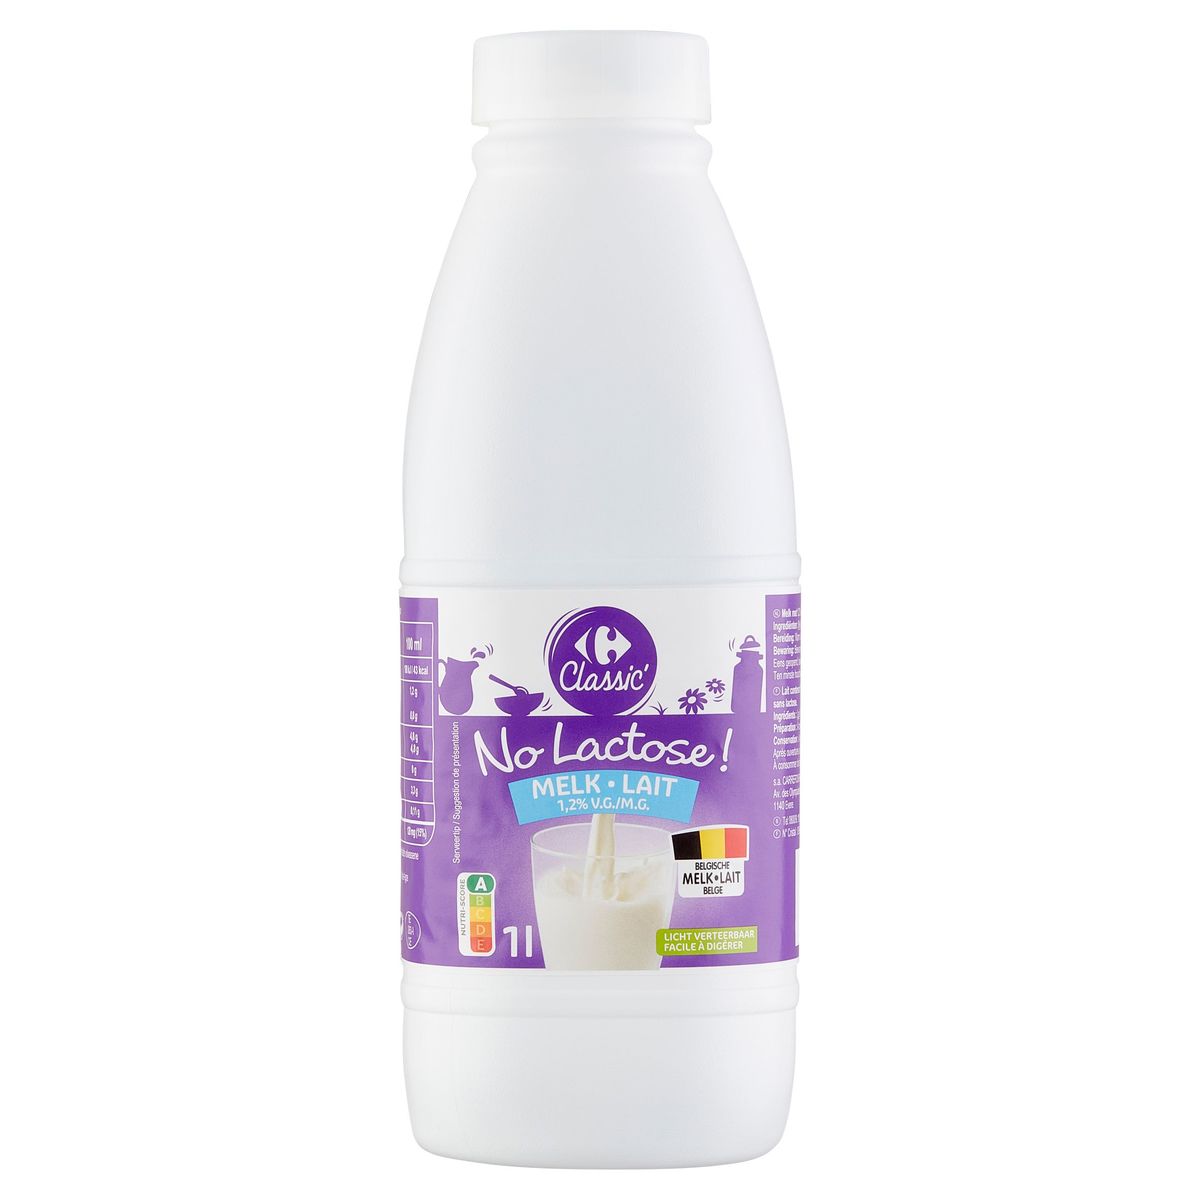 Carrefour Classic' No Lactose ! Lait 1.2% M.G. 1 l